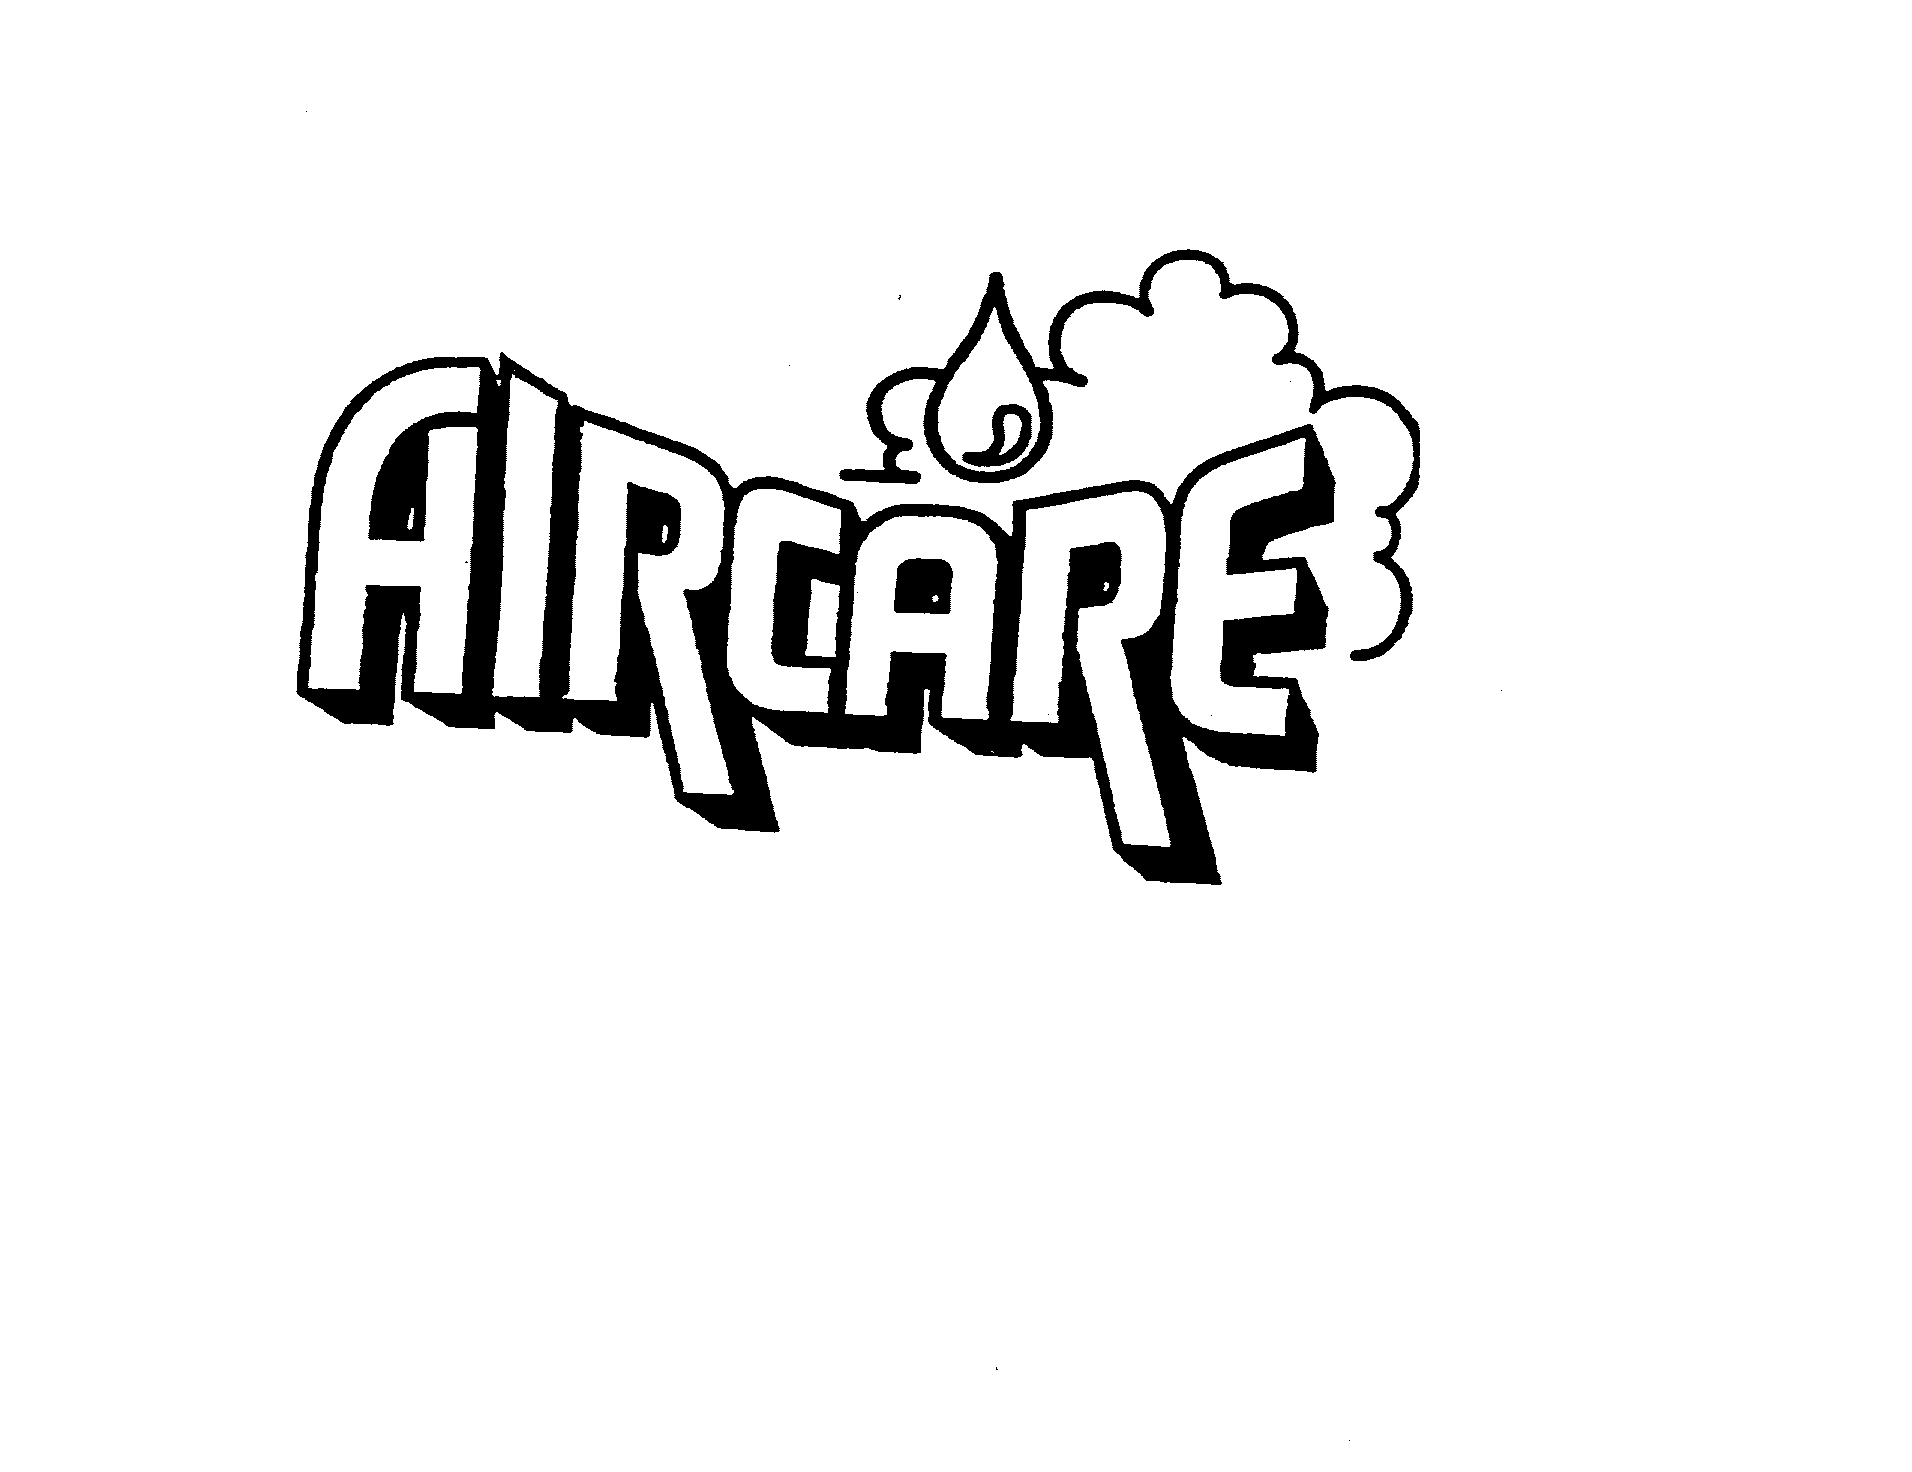 Trademark Logo AIRCARE